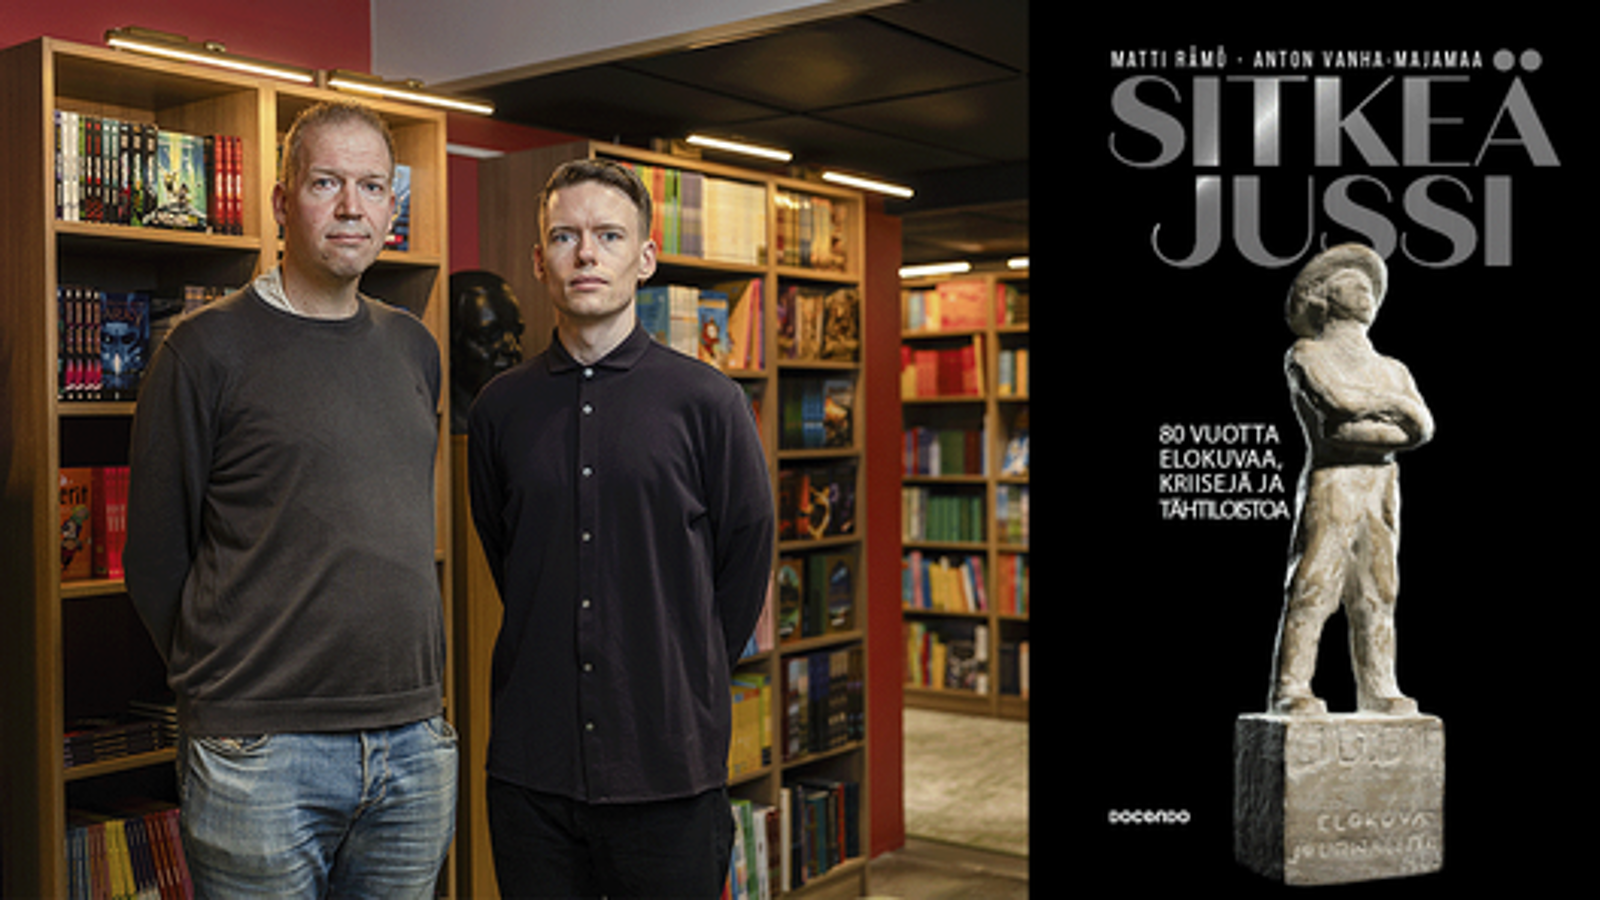 Kuvassa ovat Matti Rämö ja Anton Vanha-Majamaa seisomassa kirjahyllyjen edessä. Vasemmalla on kirjan kansi ja siinä on mustalla pohjalla on Jussi-patsas isoin kirjaimin Sitkeä Jussi. 